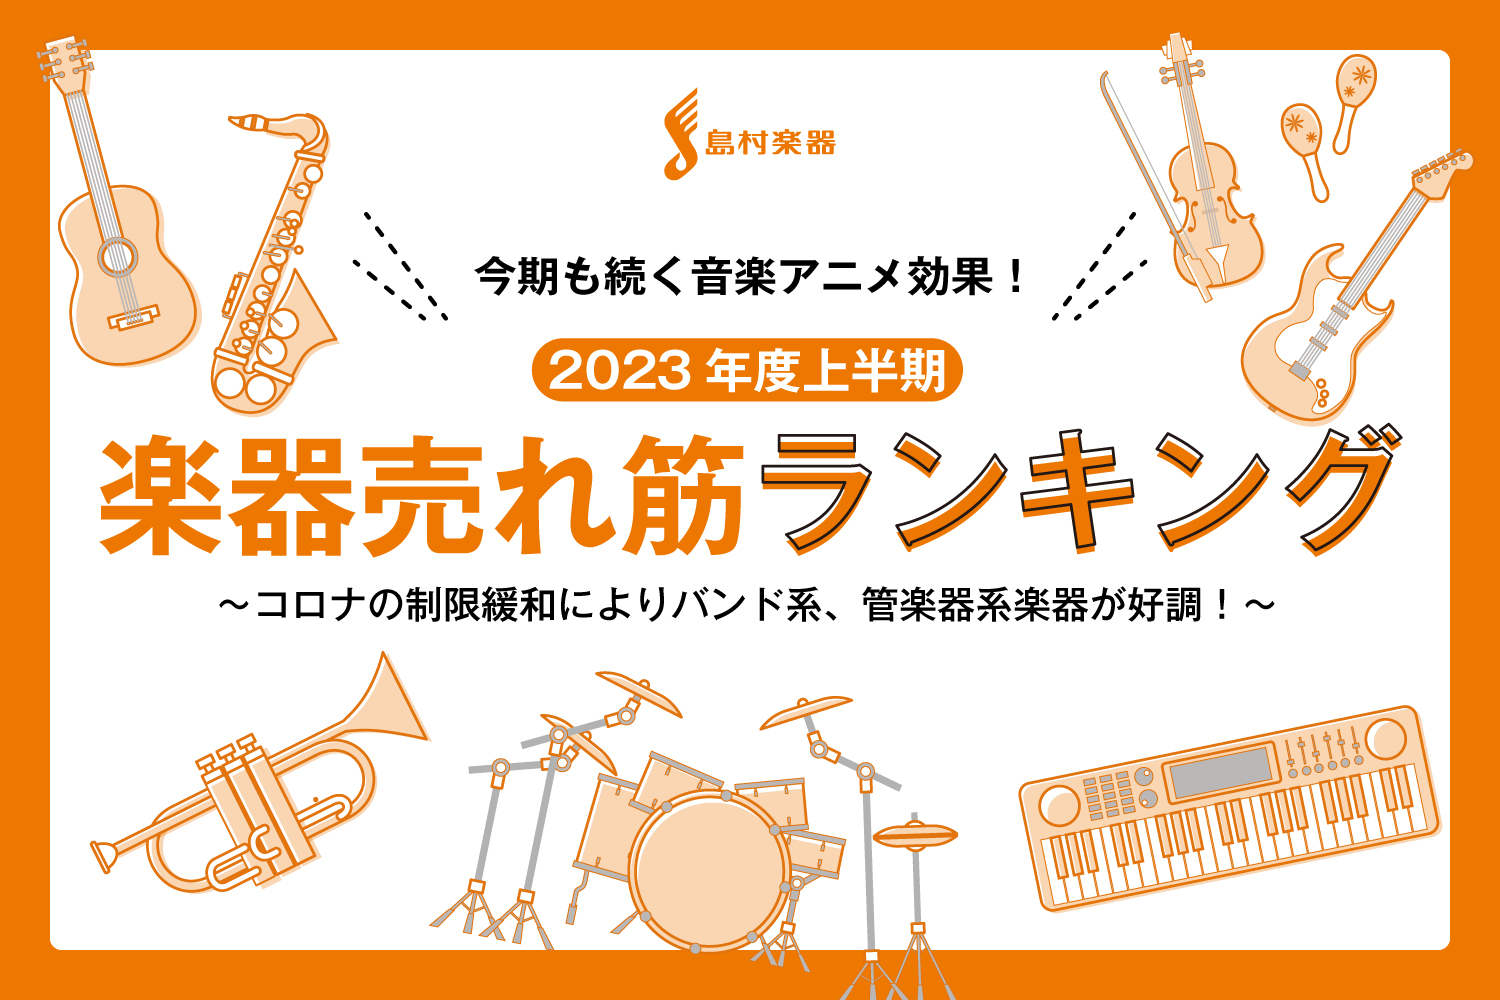 島村楽器株式会社(本社：東京都江戸川区、代表取締役社長：廣瀬 利明、以下 島村楽器)は、島村楽器の店舗で2023年度上半期に売れた楽器ランキングTOP10を発表いたします。 今回も……